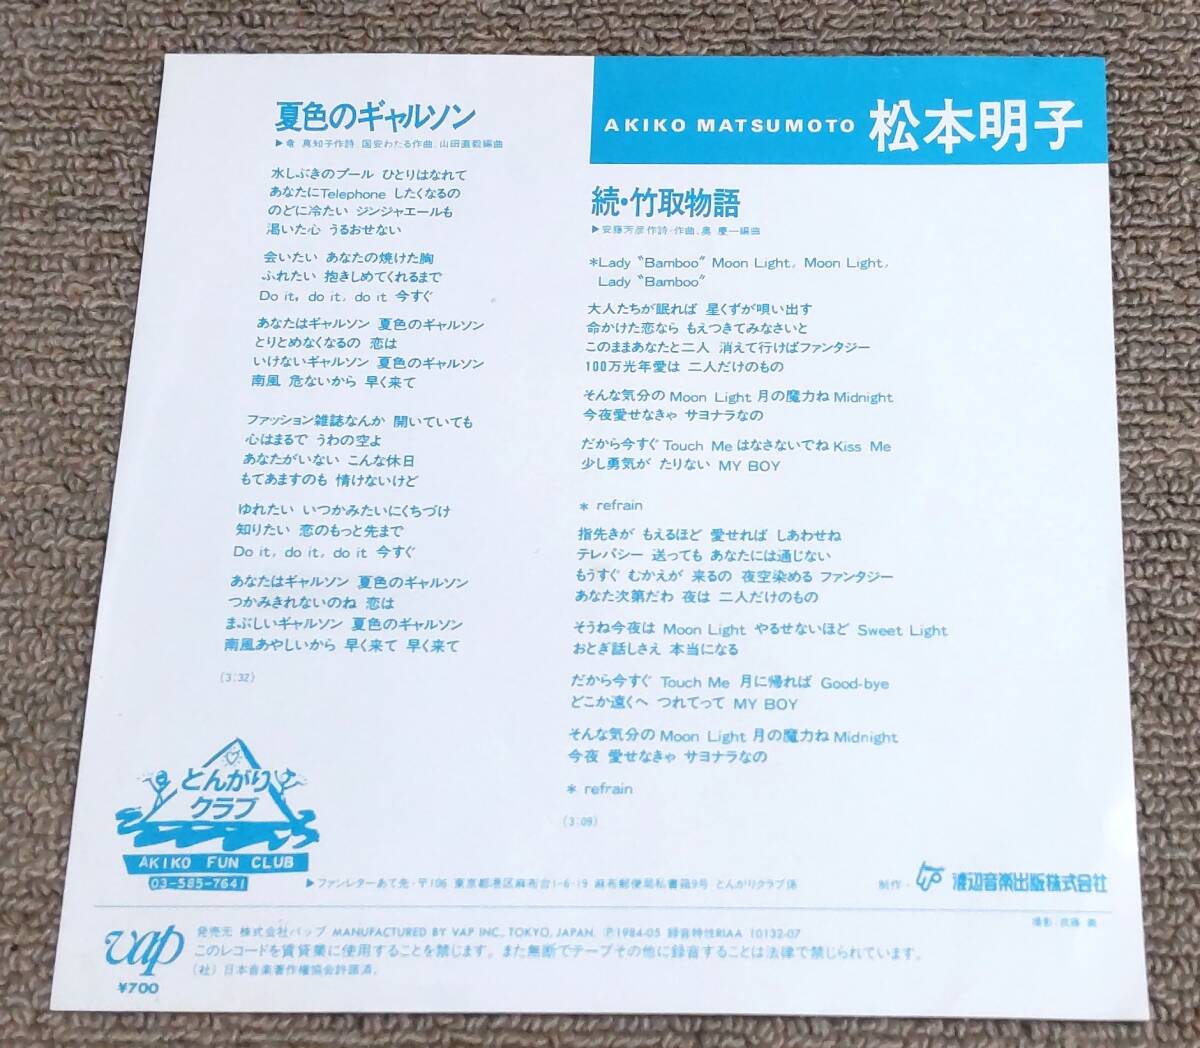 松本明子 '84年EP「夏色のギャルソン」アイドル時代の画像2